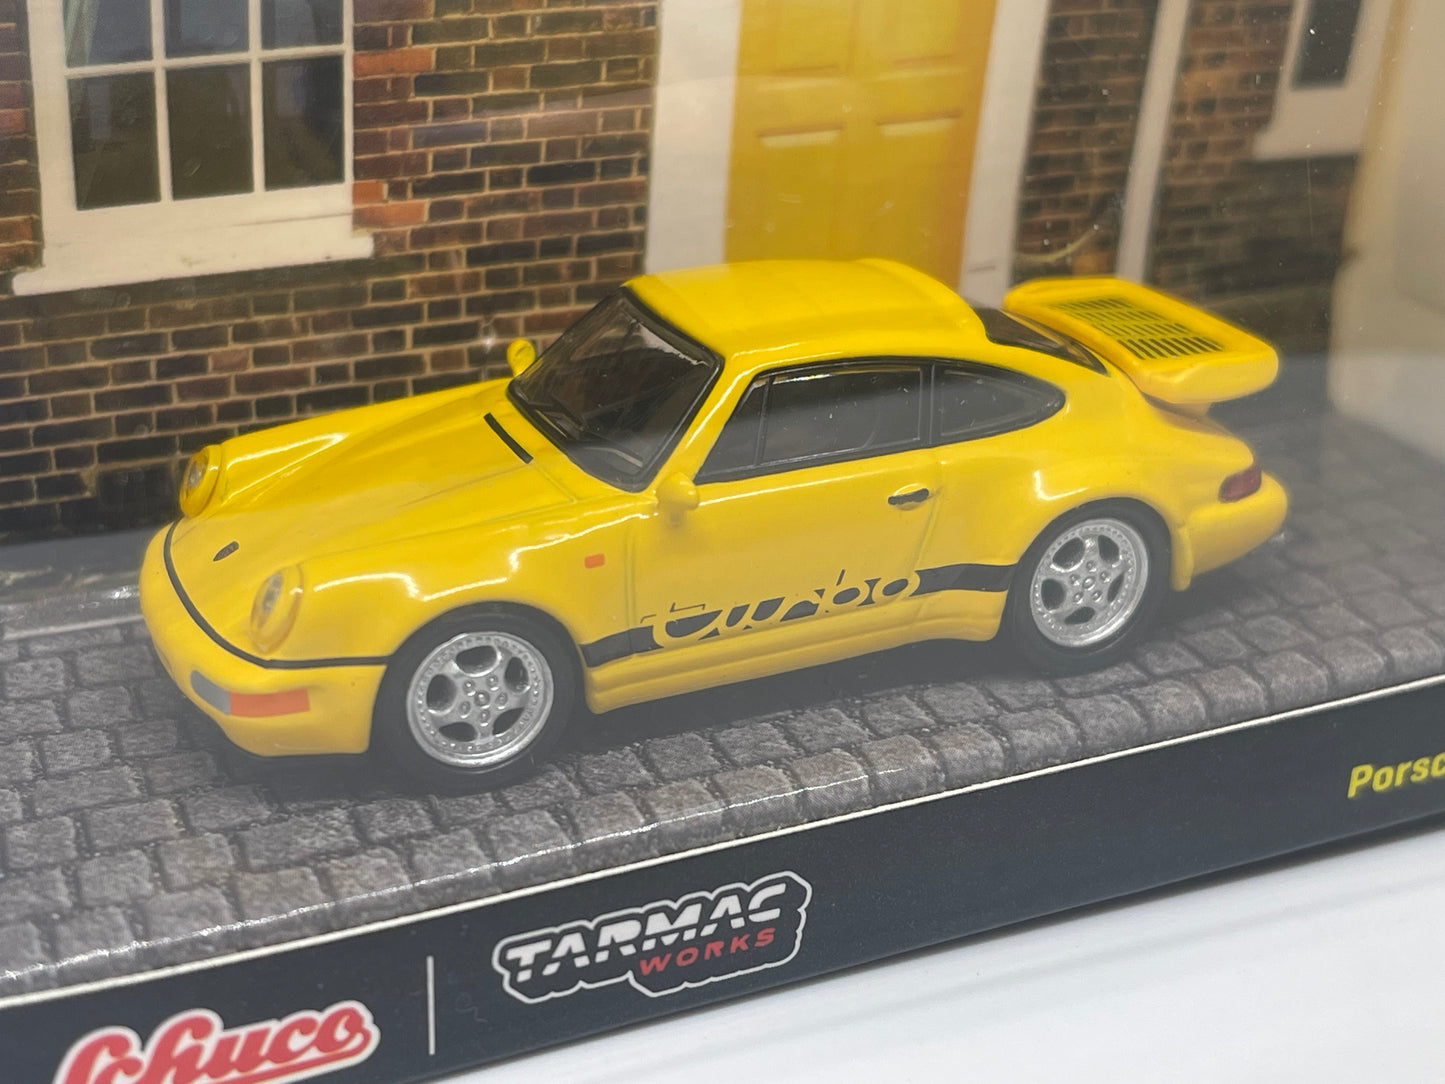 Tarmac Works - Porsche 911 Turbo (Yellow)